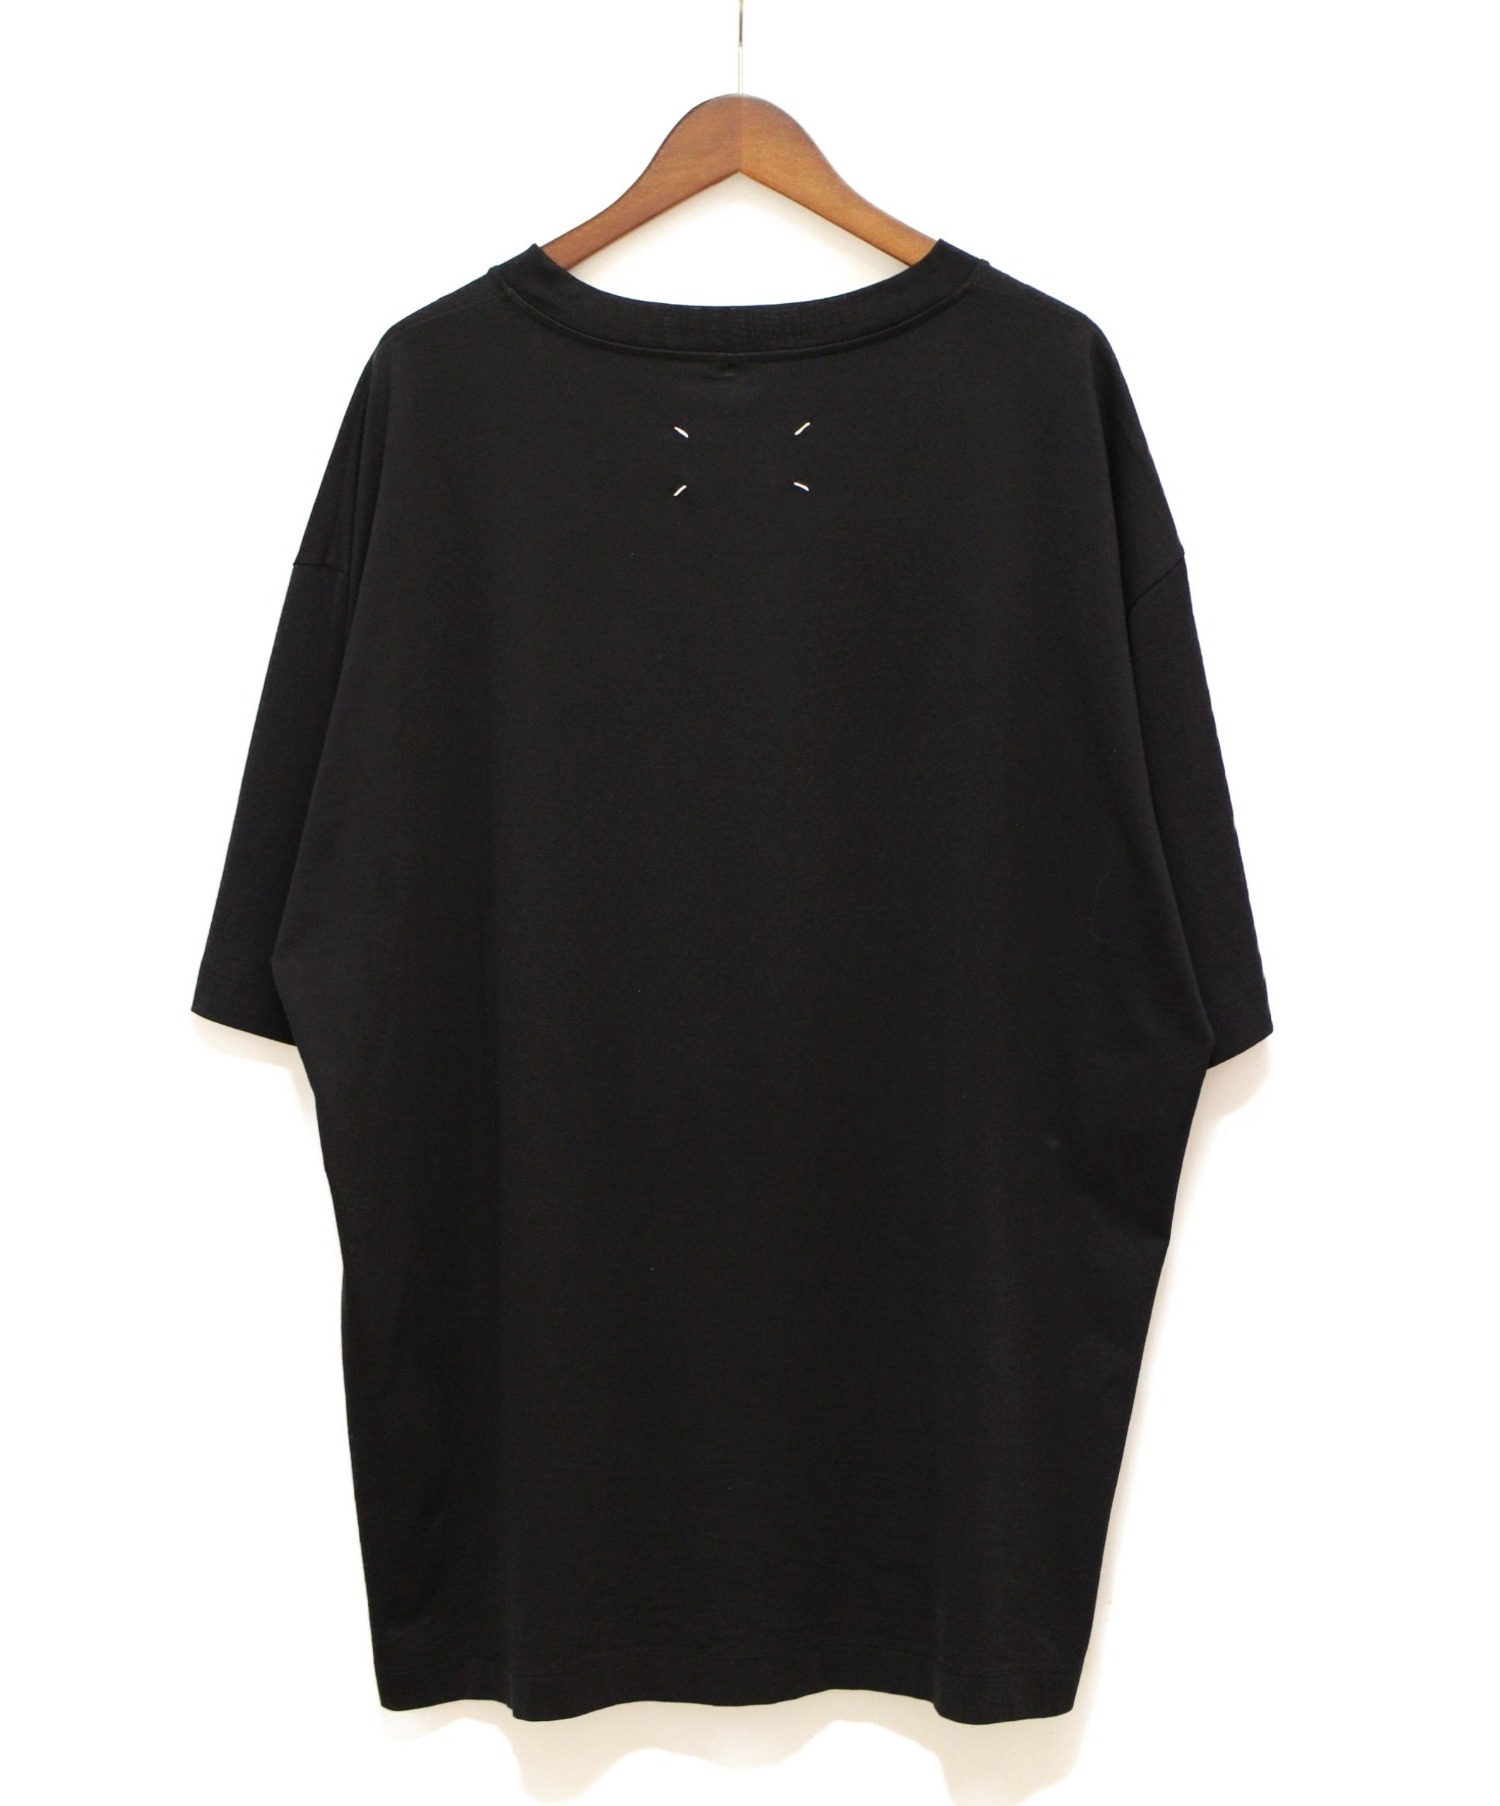 Maison Margiela (メゾンマルジェラ) 20SS オーバーサイズナンバーロゴTシャツ ブラック サイズ:52